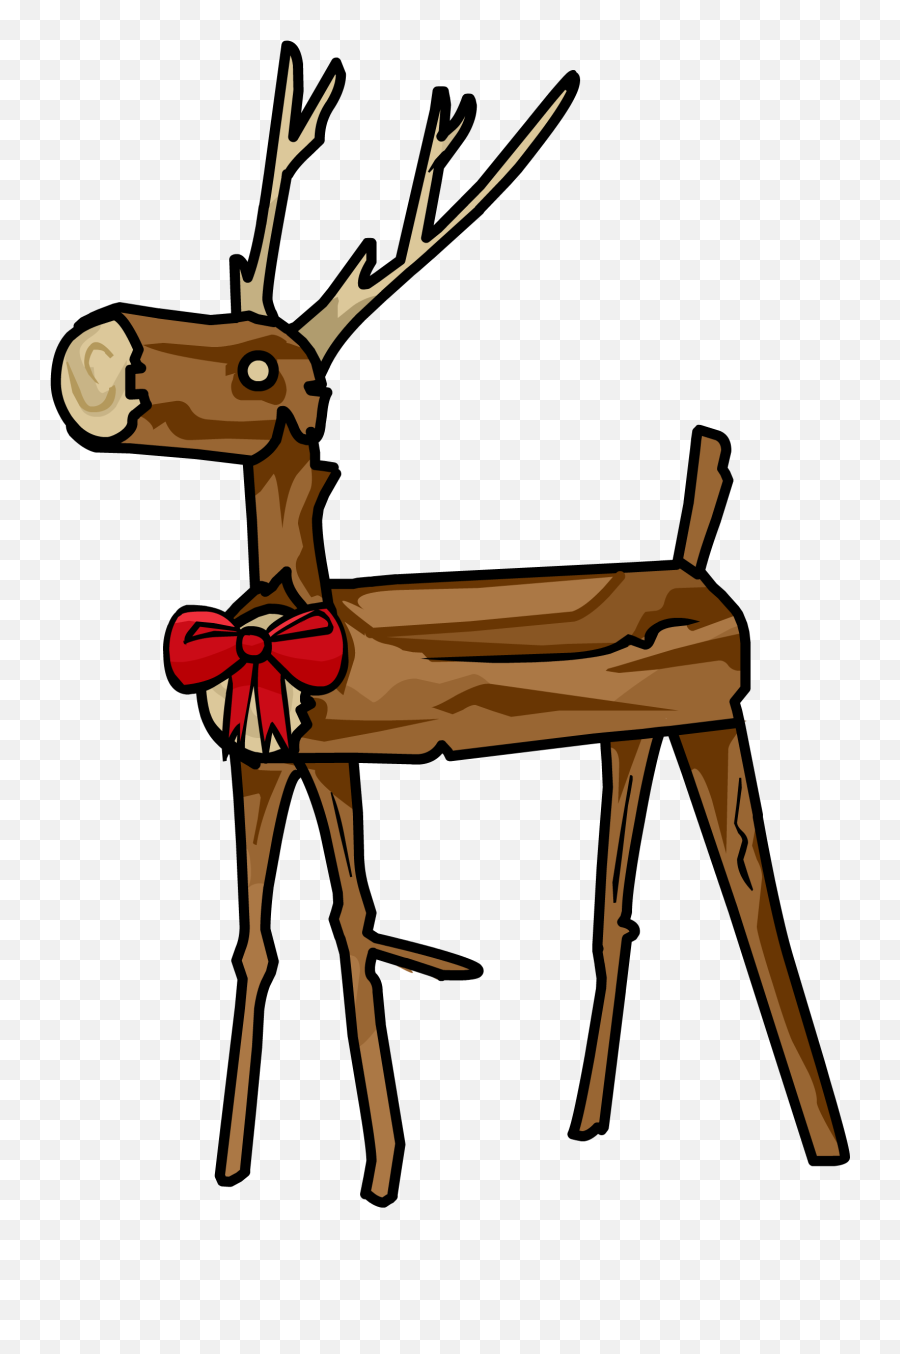 Download Wooden Reindeer - Clip Art Emoji,Reindeer Clipart